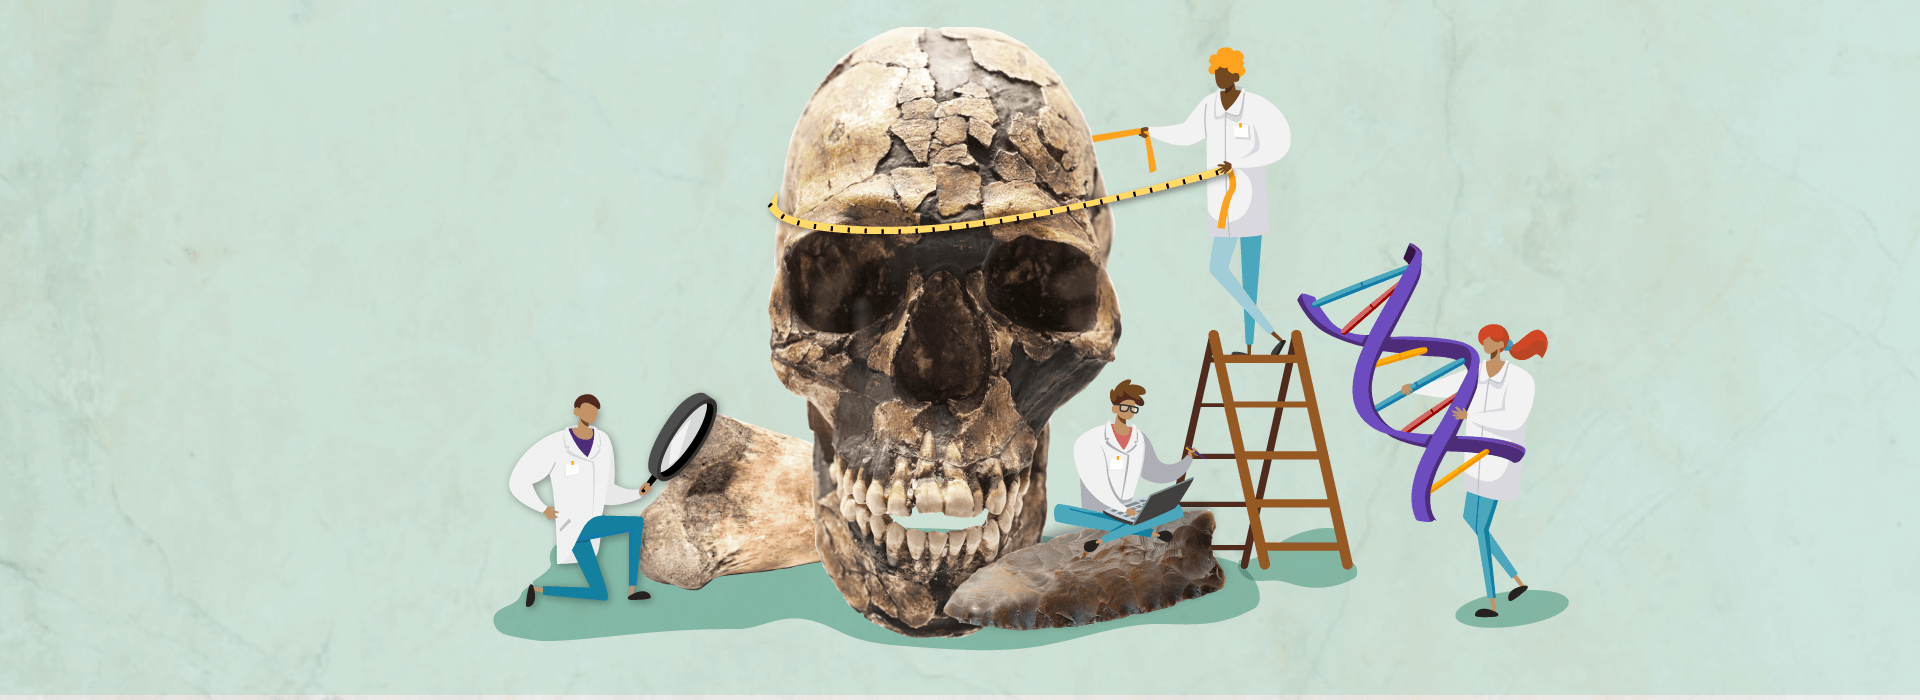 Montaje de un cráneo de Homo sapiens con ilustraciones de científicos alrededor.